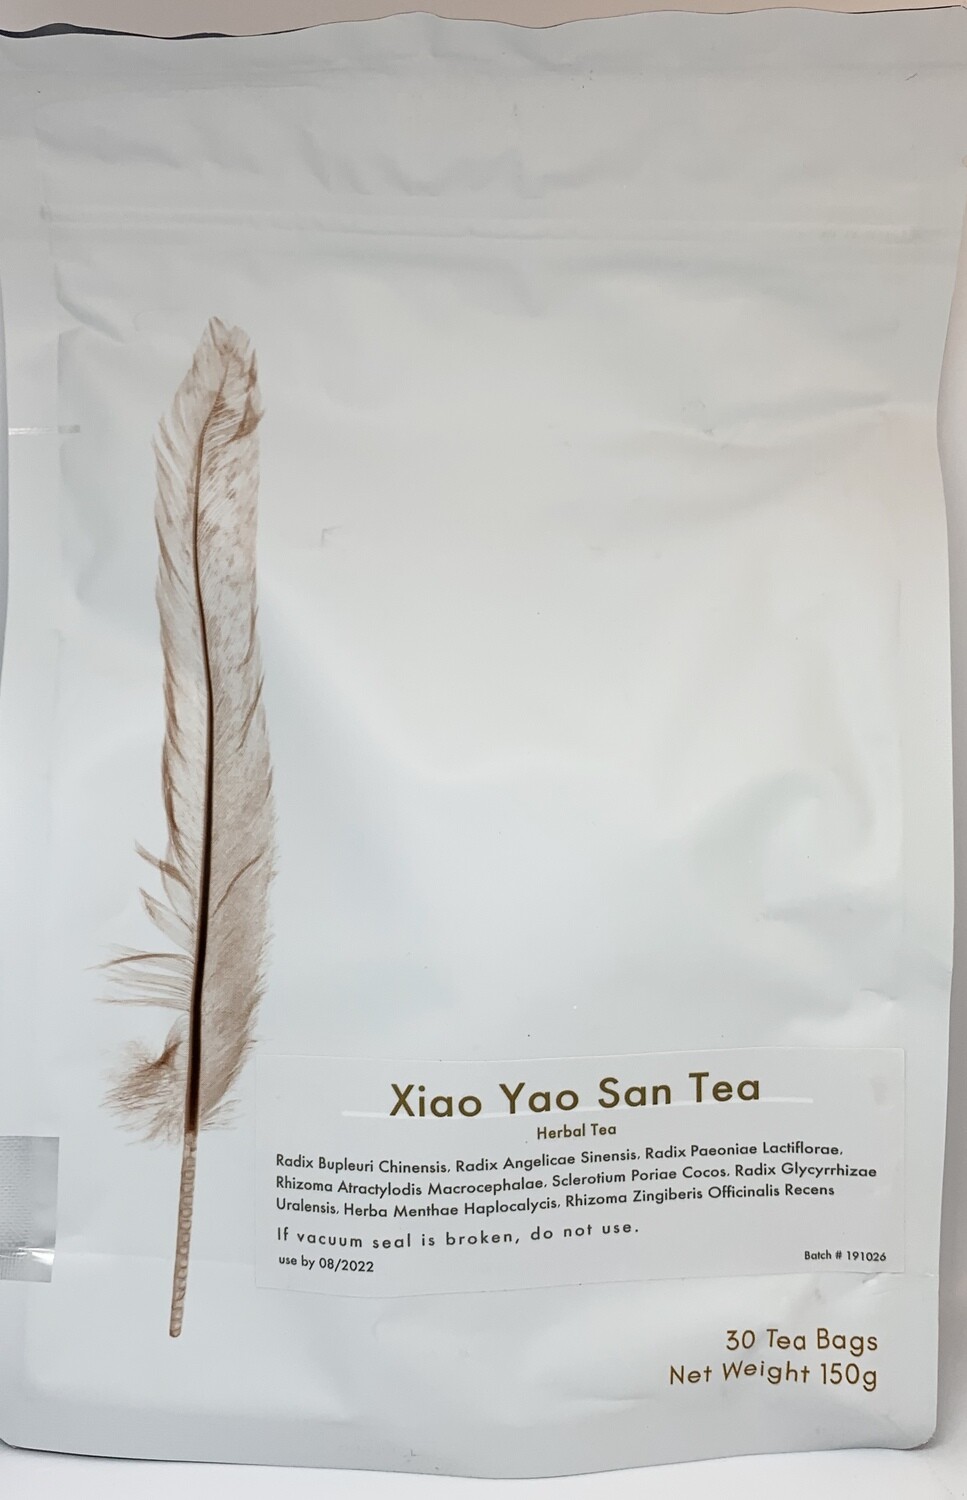 Xiao Yao San tea 30 teabags by Botanical Biohacking